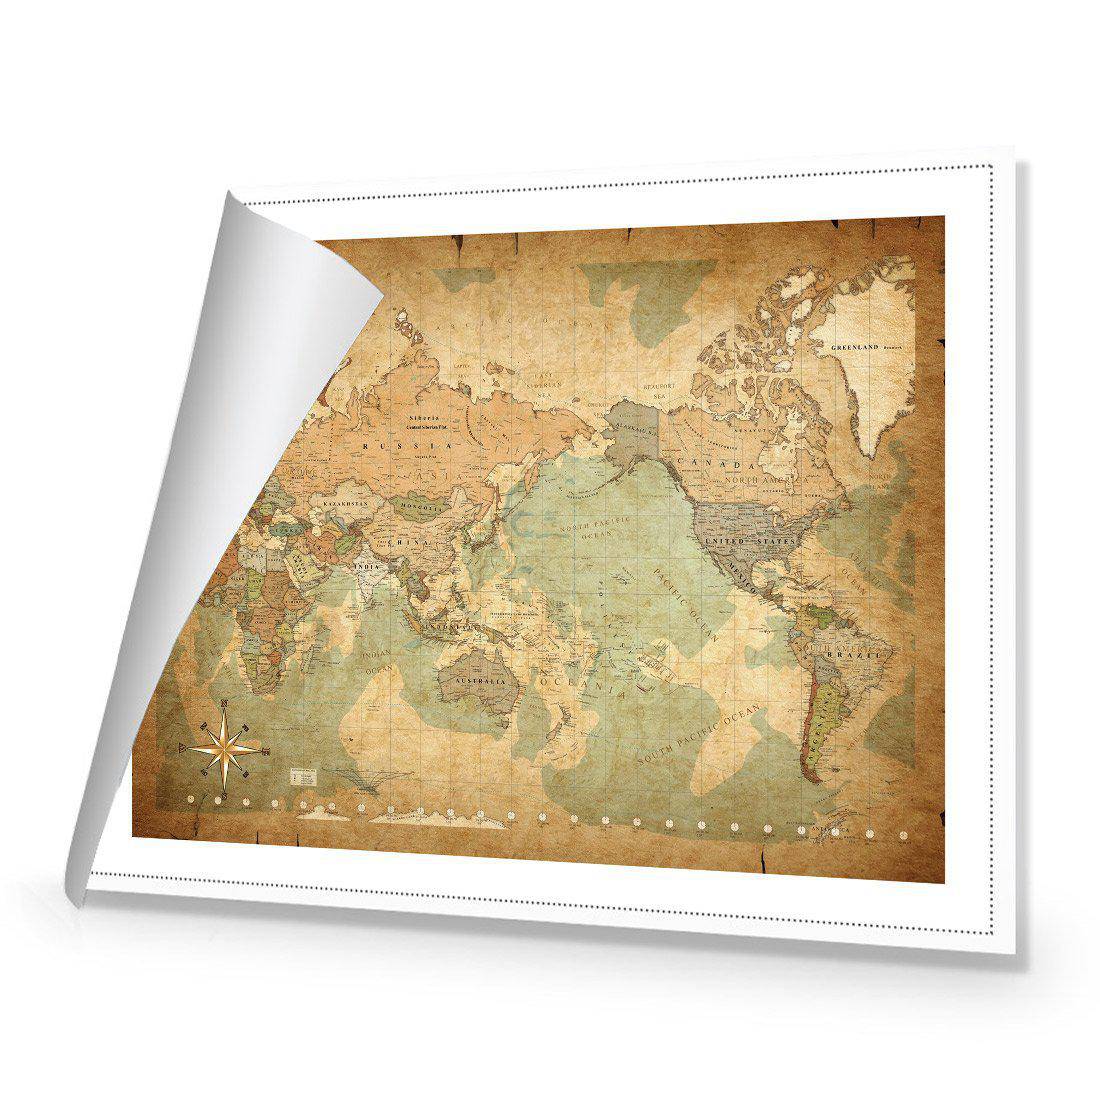 Antique World Map Canvas Art-Canvas-Wall Art Designs-45x30cm-Rolled Canvas-Wall Art Designs